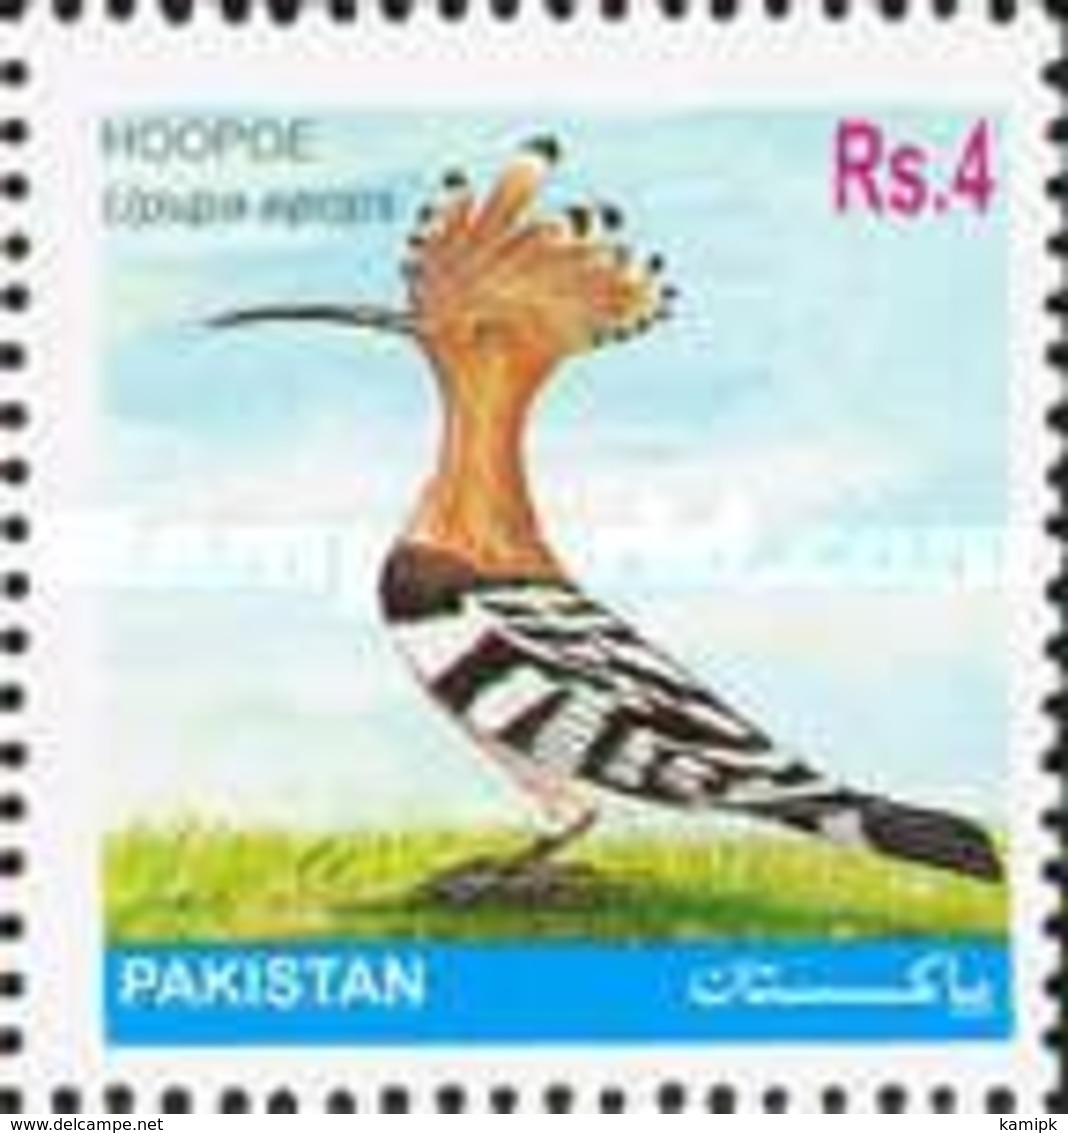 MNH STAMPS Pakistan - Protected Wild Animals - Birds - 2001 - Pakistan